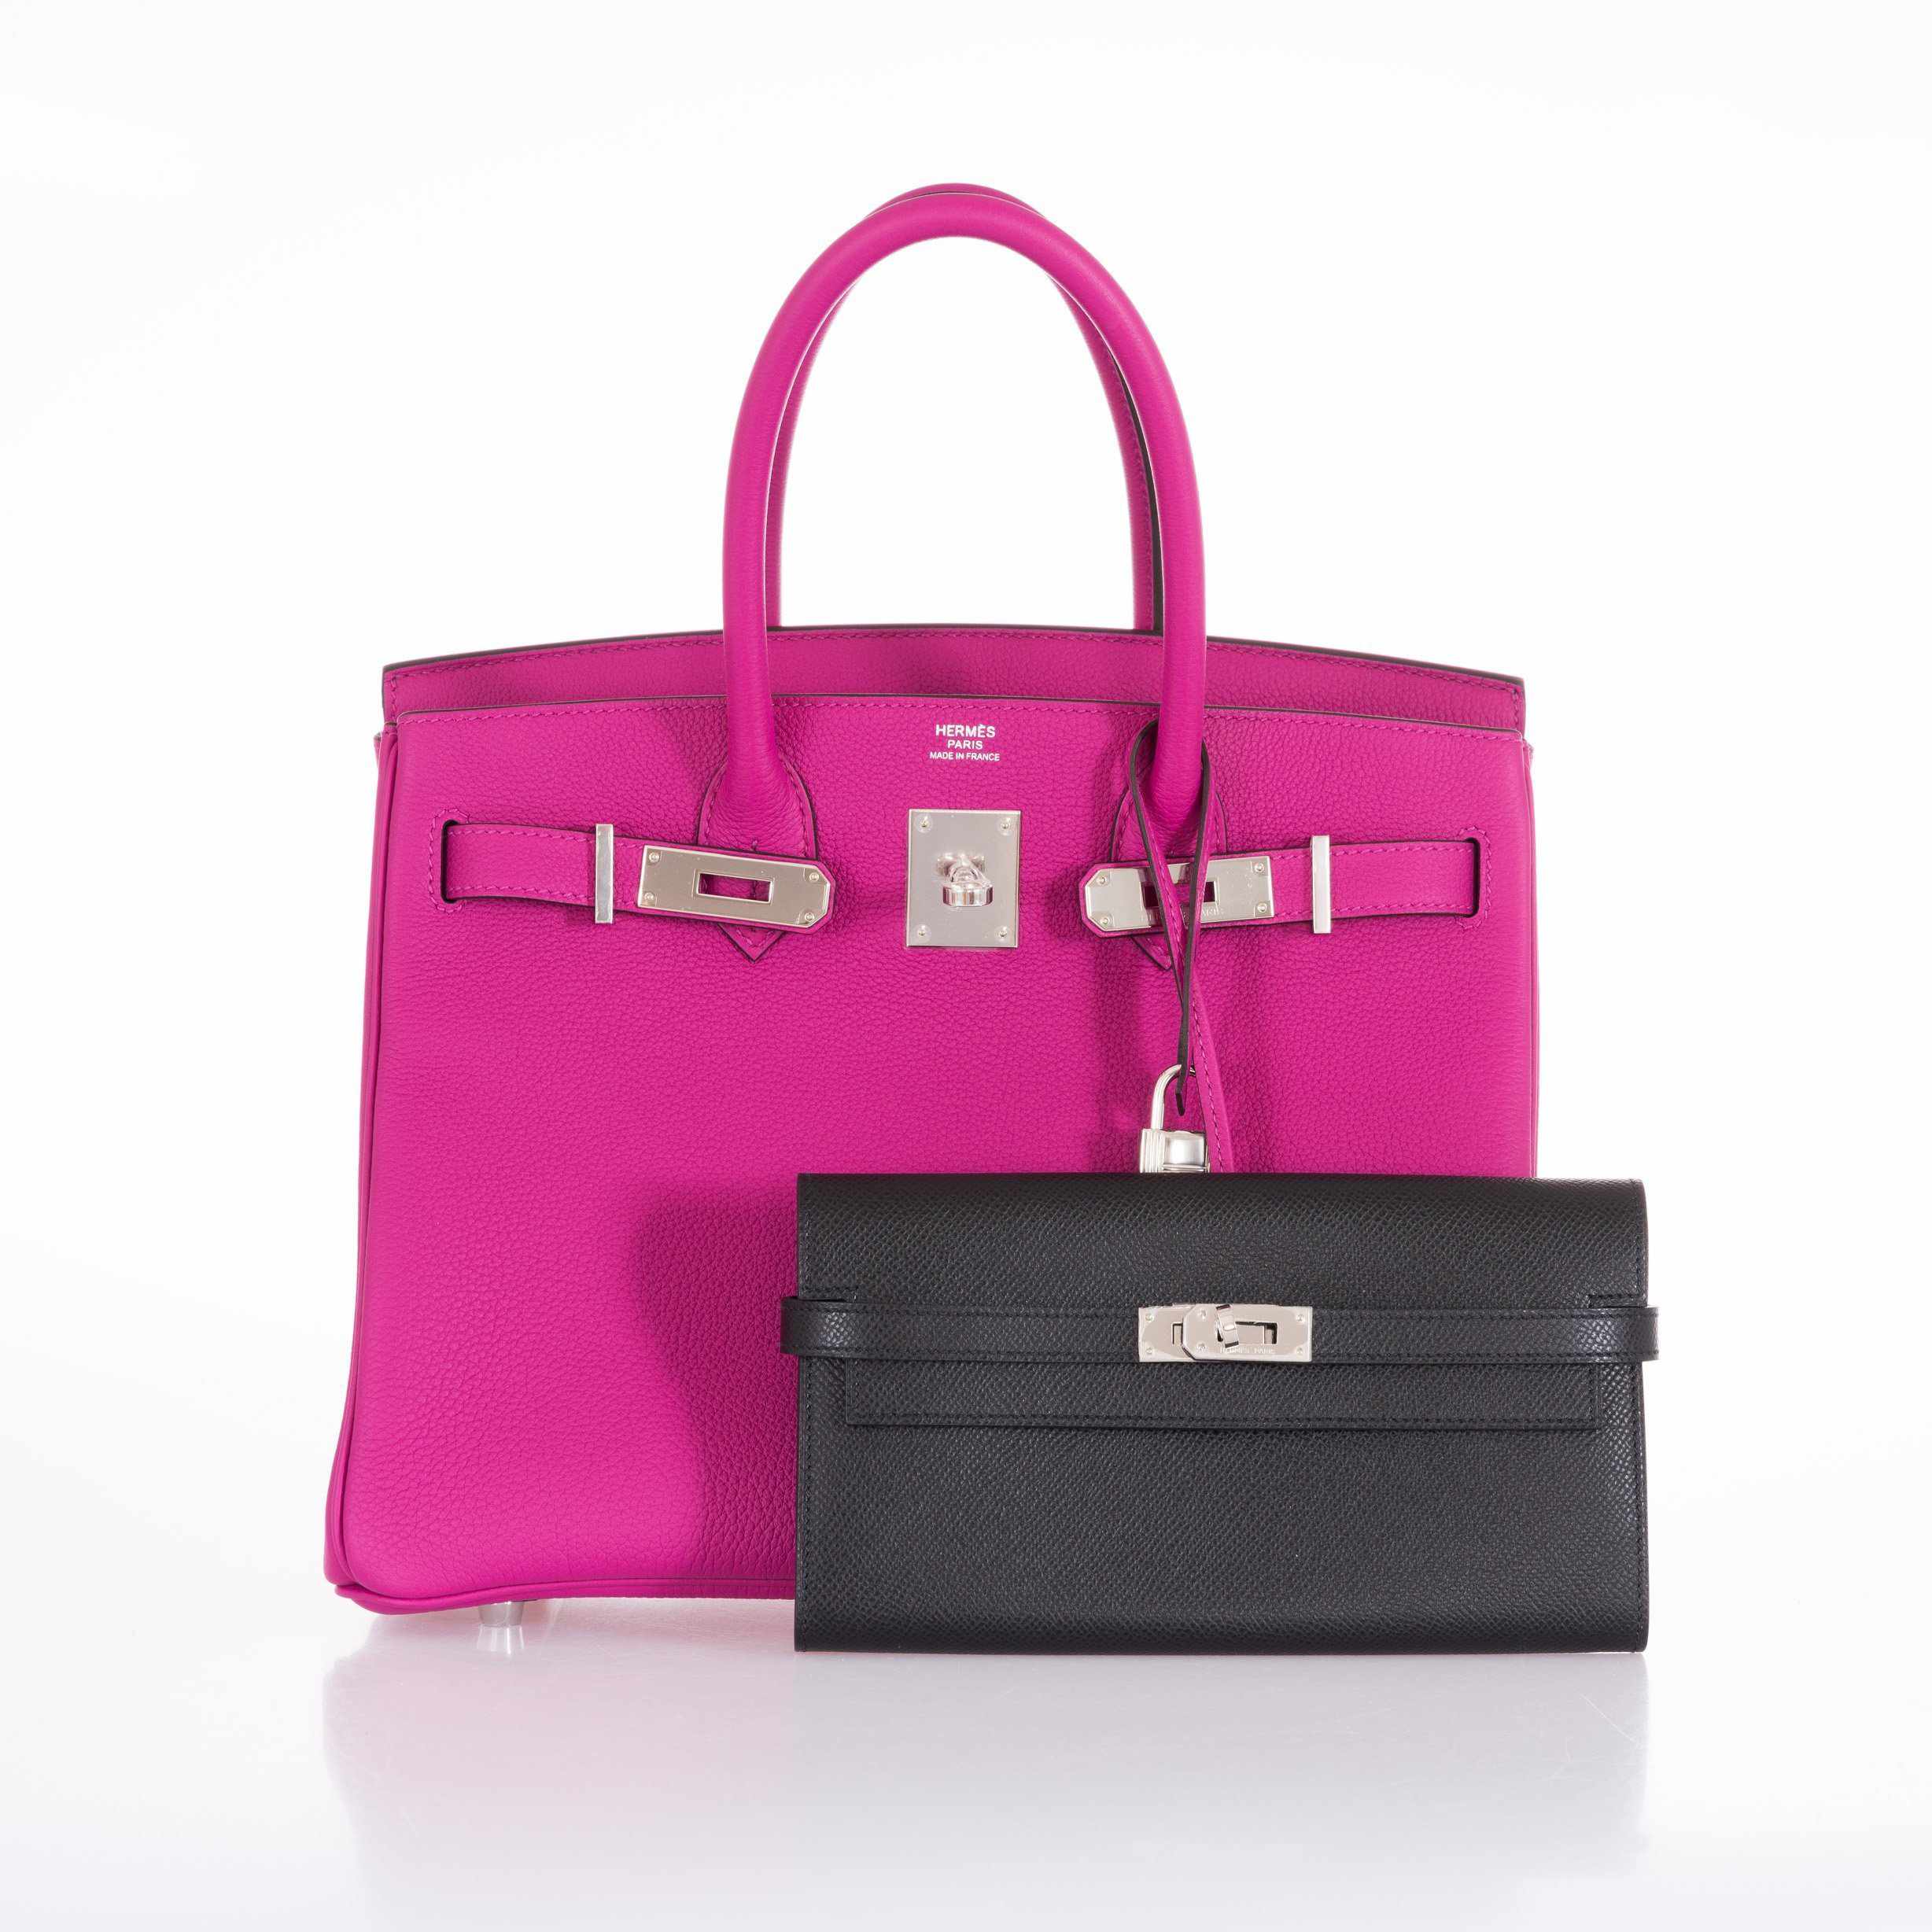 Hermès Birkin 30 Rose Pourpre Togo Palladium Hardware